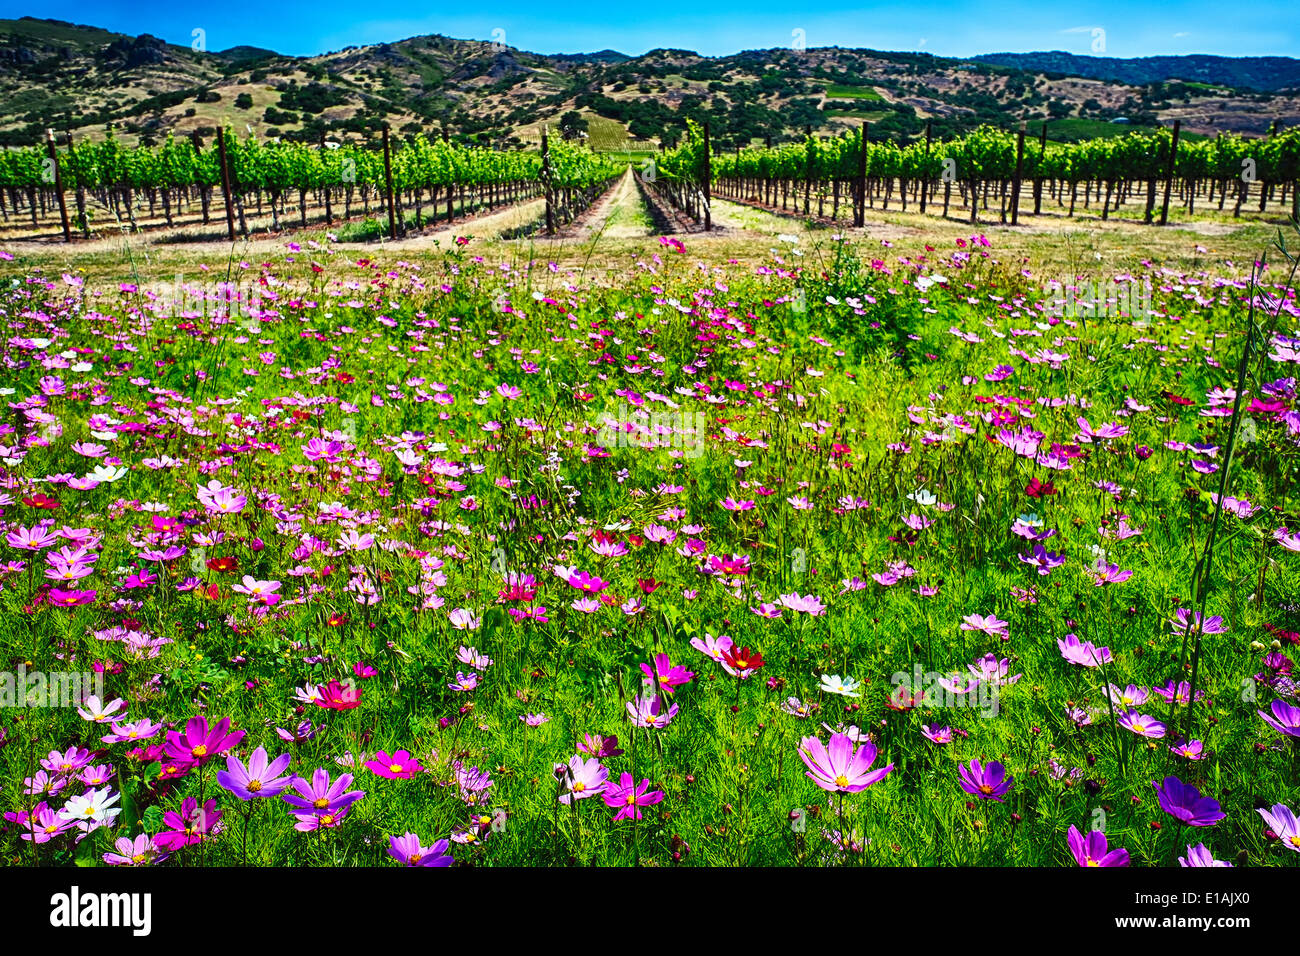 Basso Angolo di visione della molla di fiori di campo e la fila dei vitigni, Napa Valley, California Foto Stock